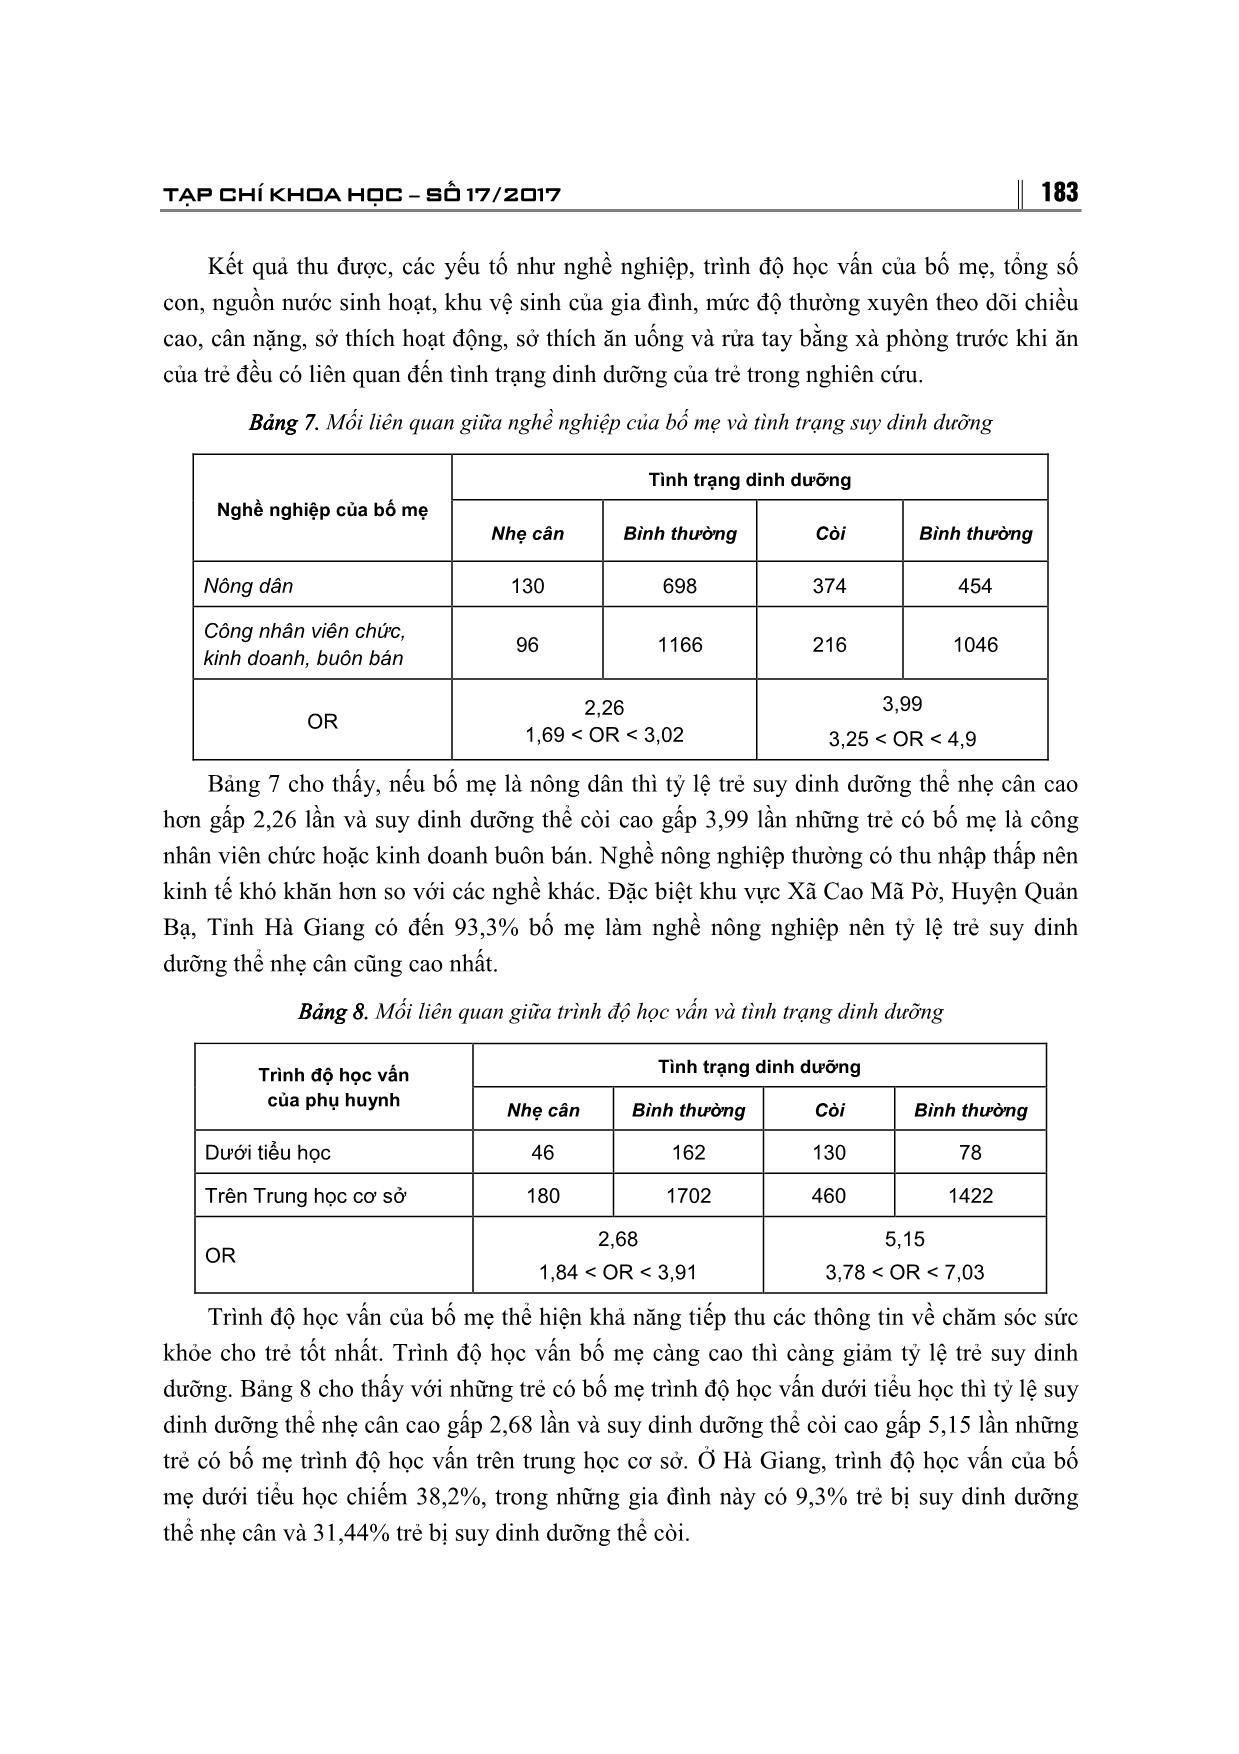 Tình trạng duy dinh dưỡng của trẻ 3-6 tuổi và các yếu tố liên quan ở 3 tỉnh Hà Giang, Hòa Bình, Vĩnh Phúc trang 6